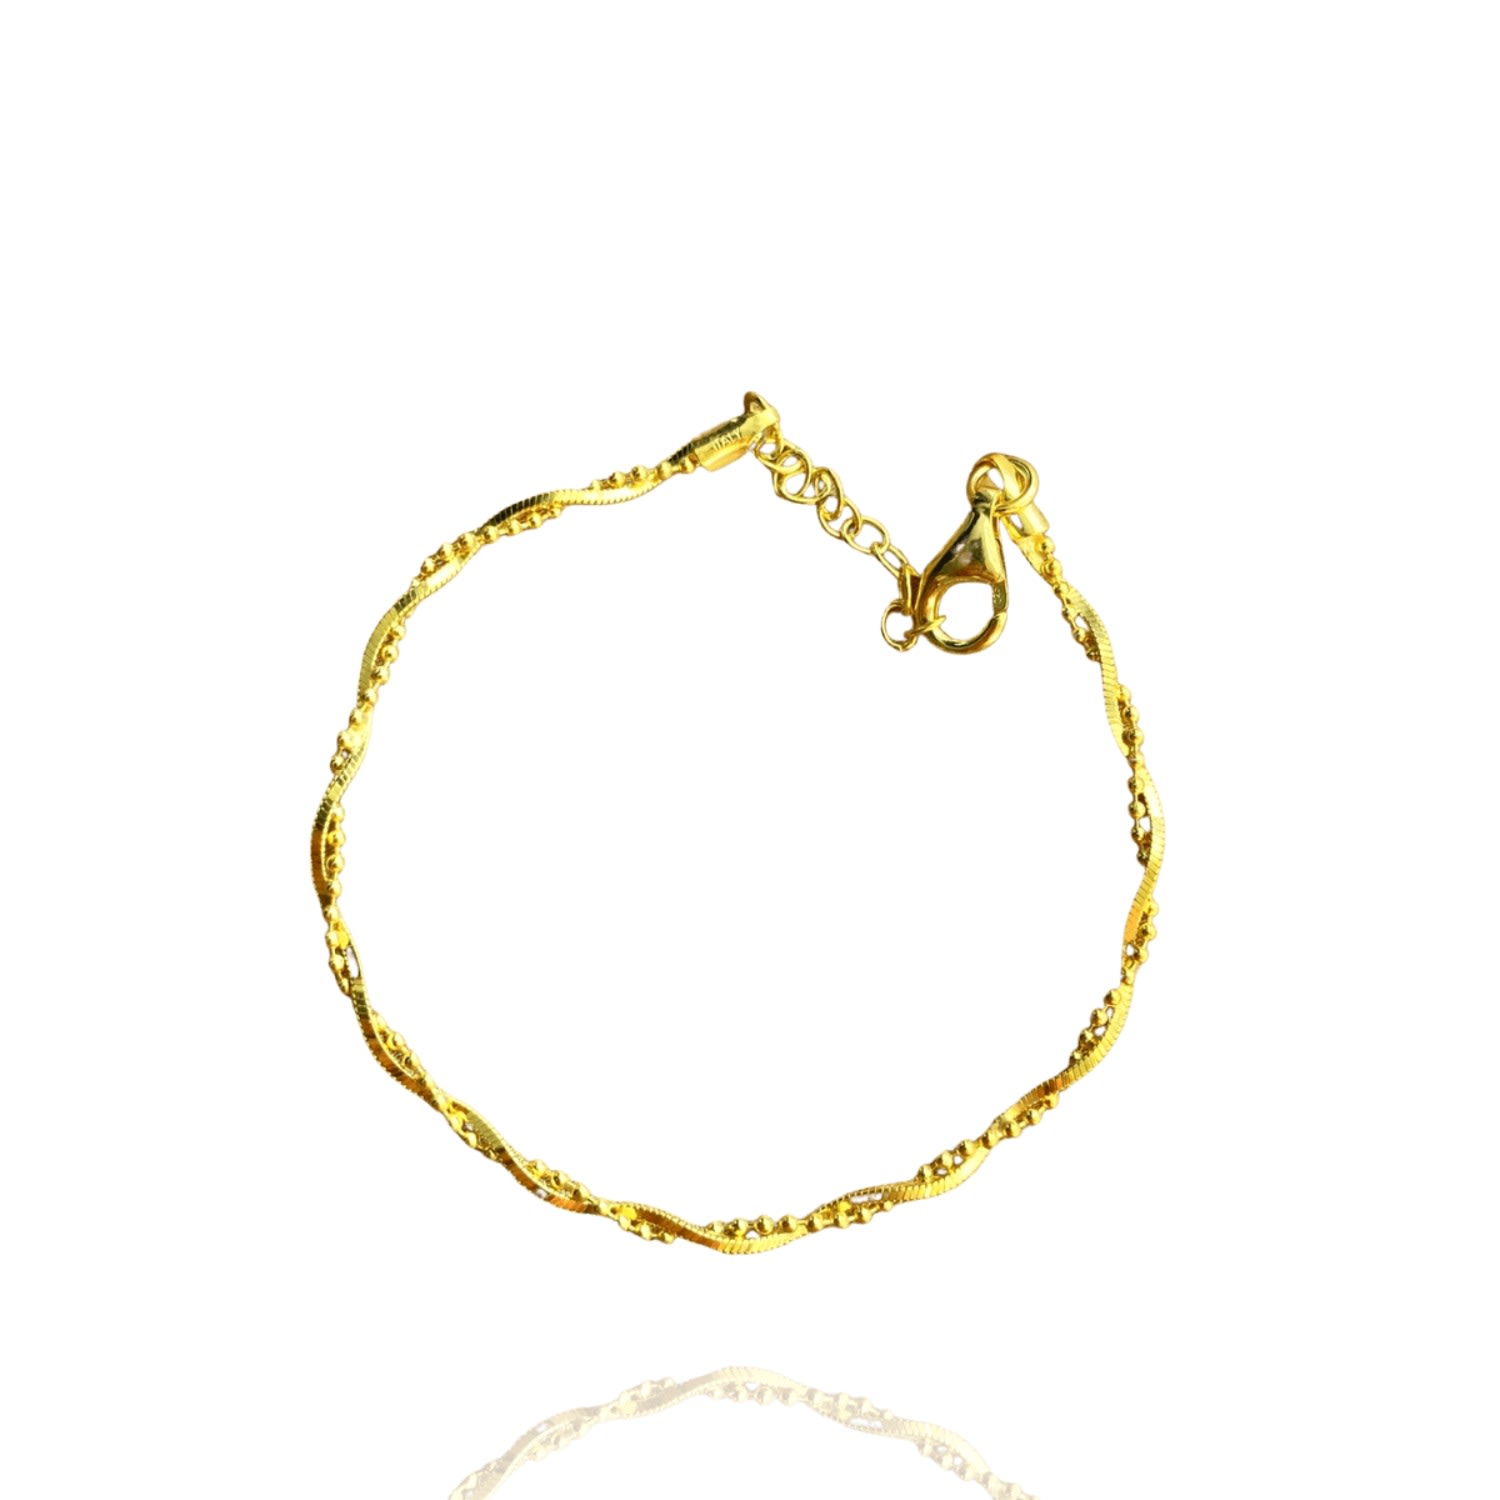 Spero London Women's Bead Chain Twisted Sterling Silver Bracelet - Gold